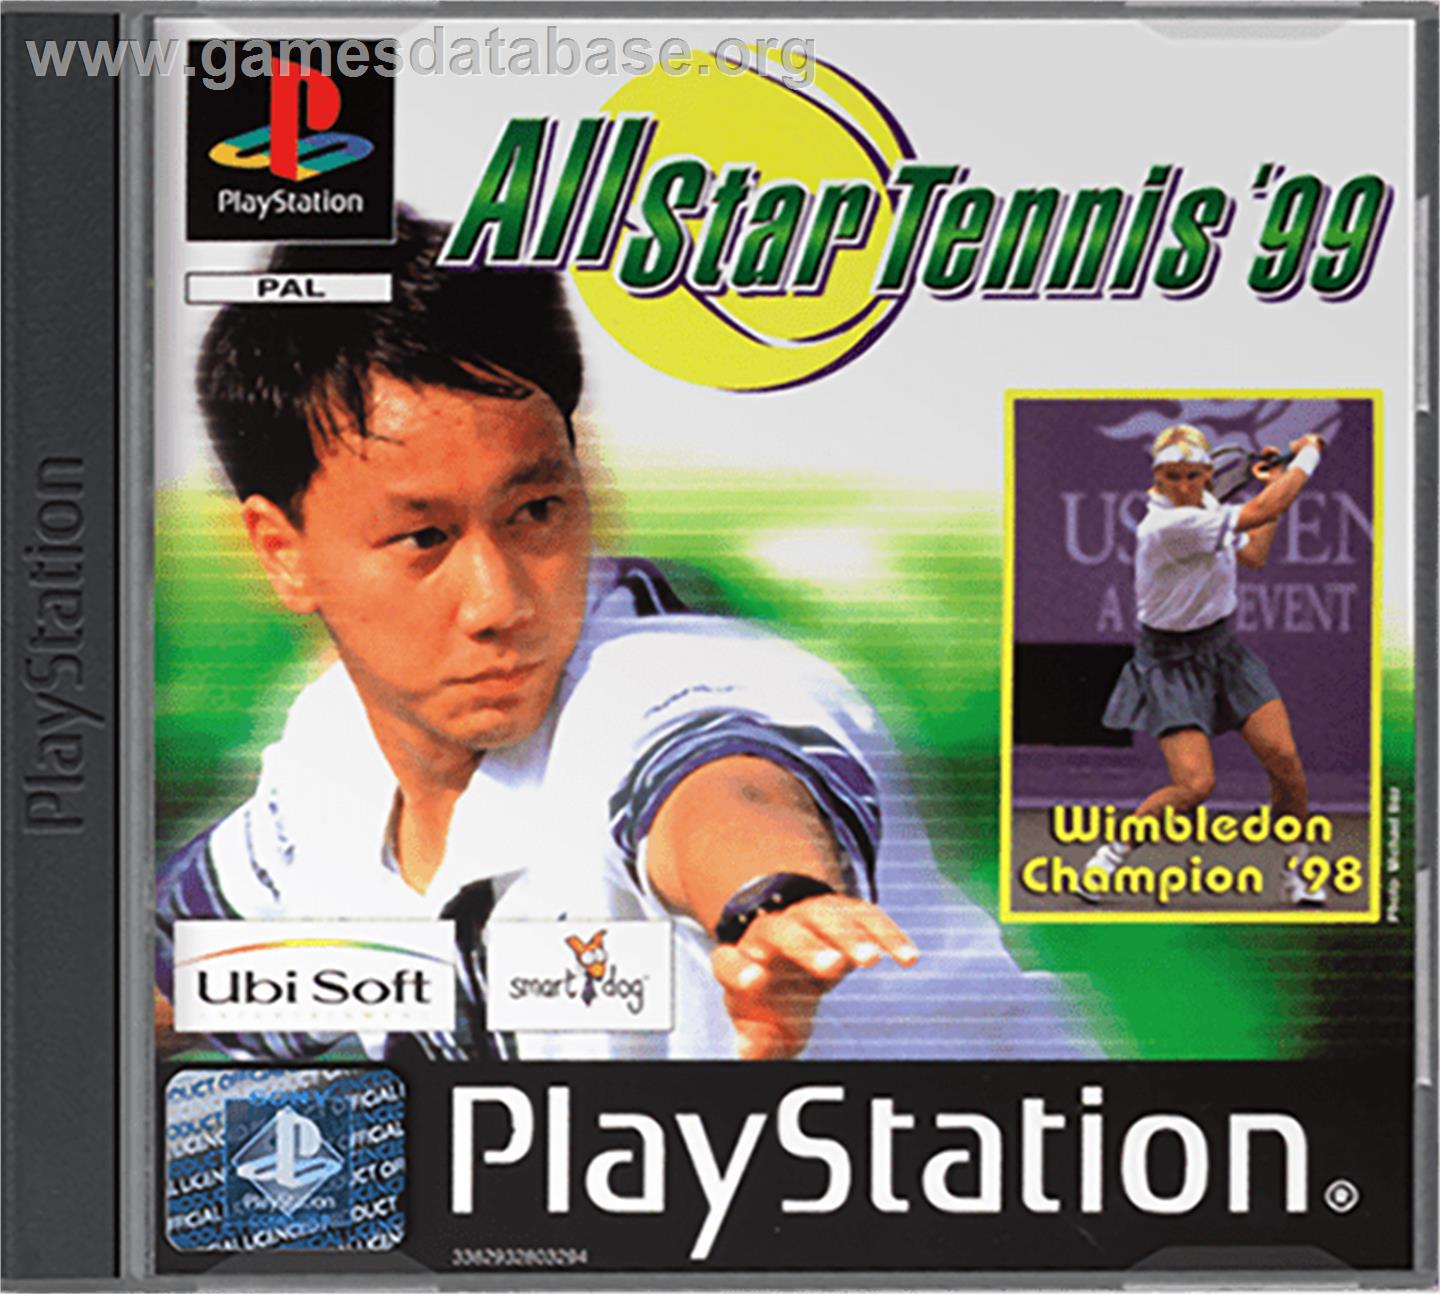 All Star Tennis '99 - Sony Playstation - Artwork - Box